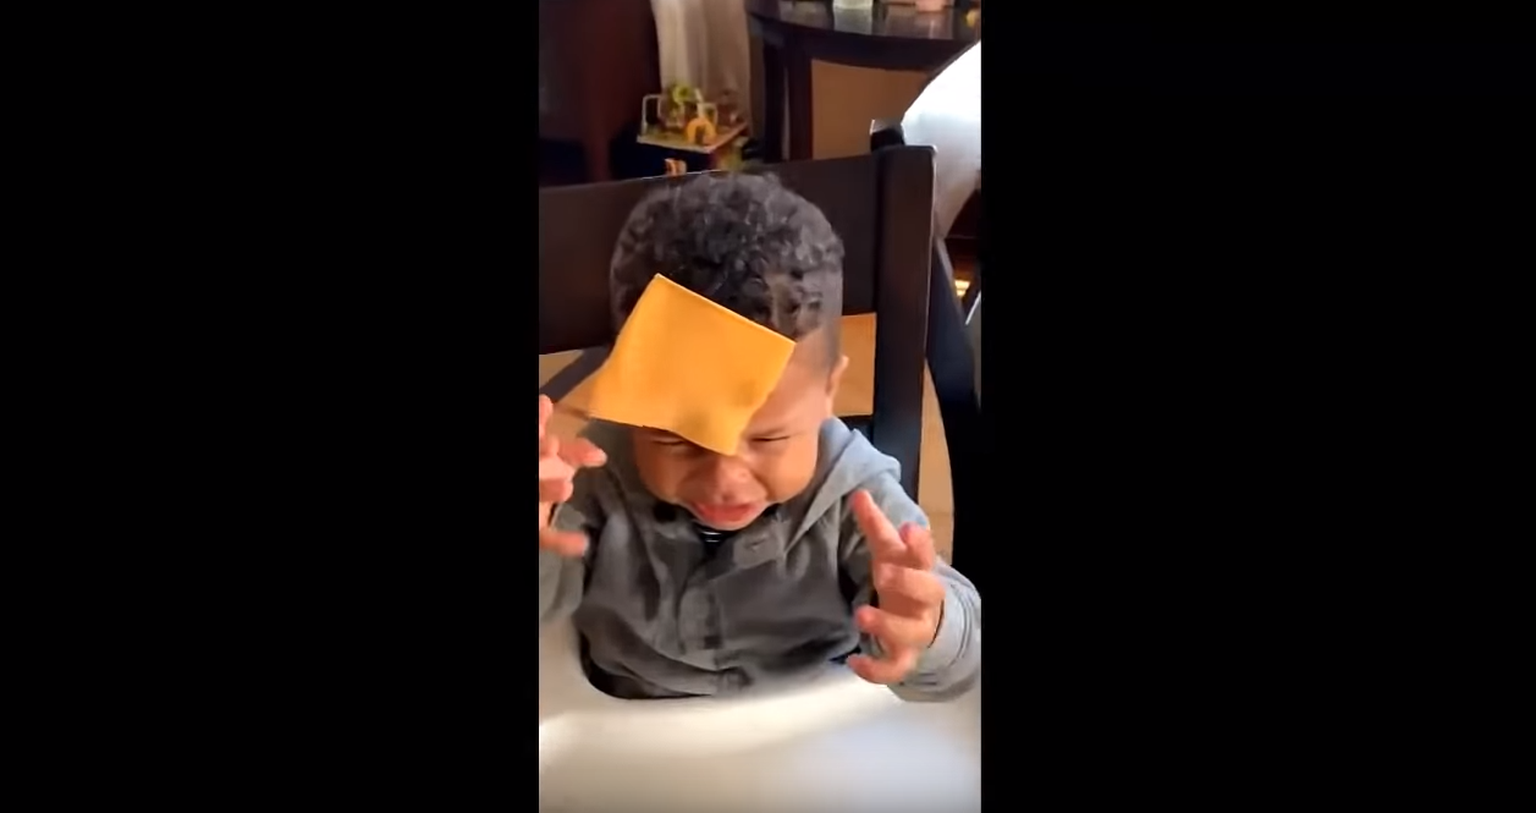 Kuvatõmmis YouTube videost, kus lapsevanemad oma lapsi juustuga loobivad.